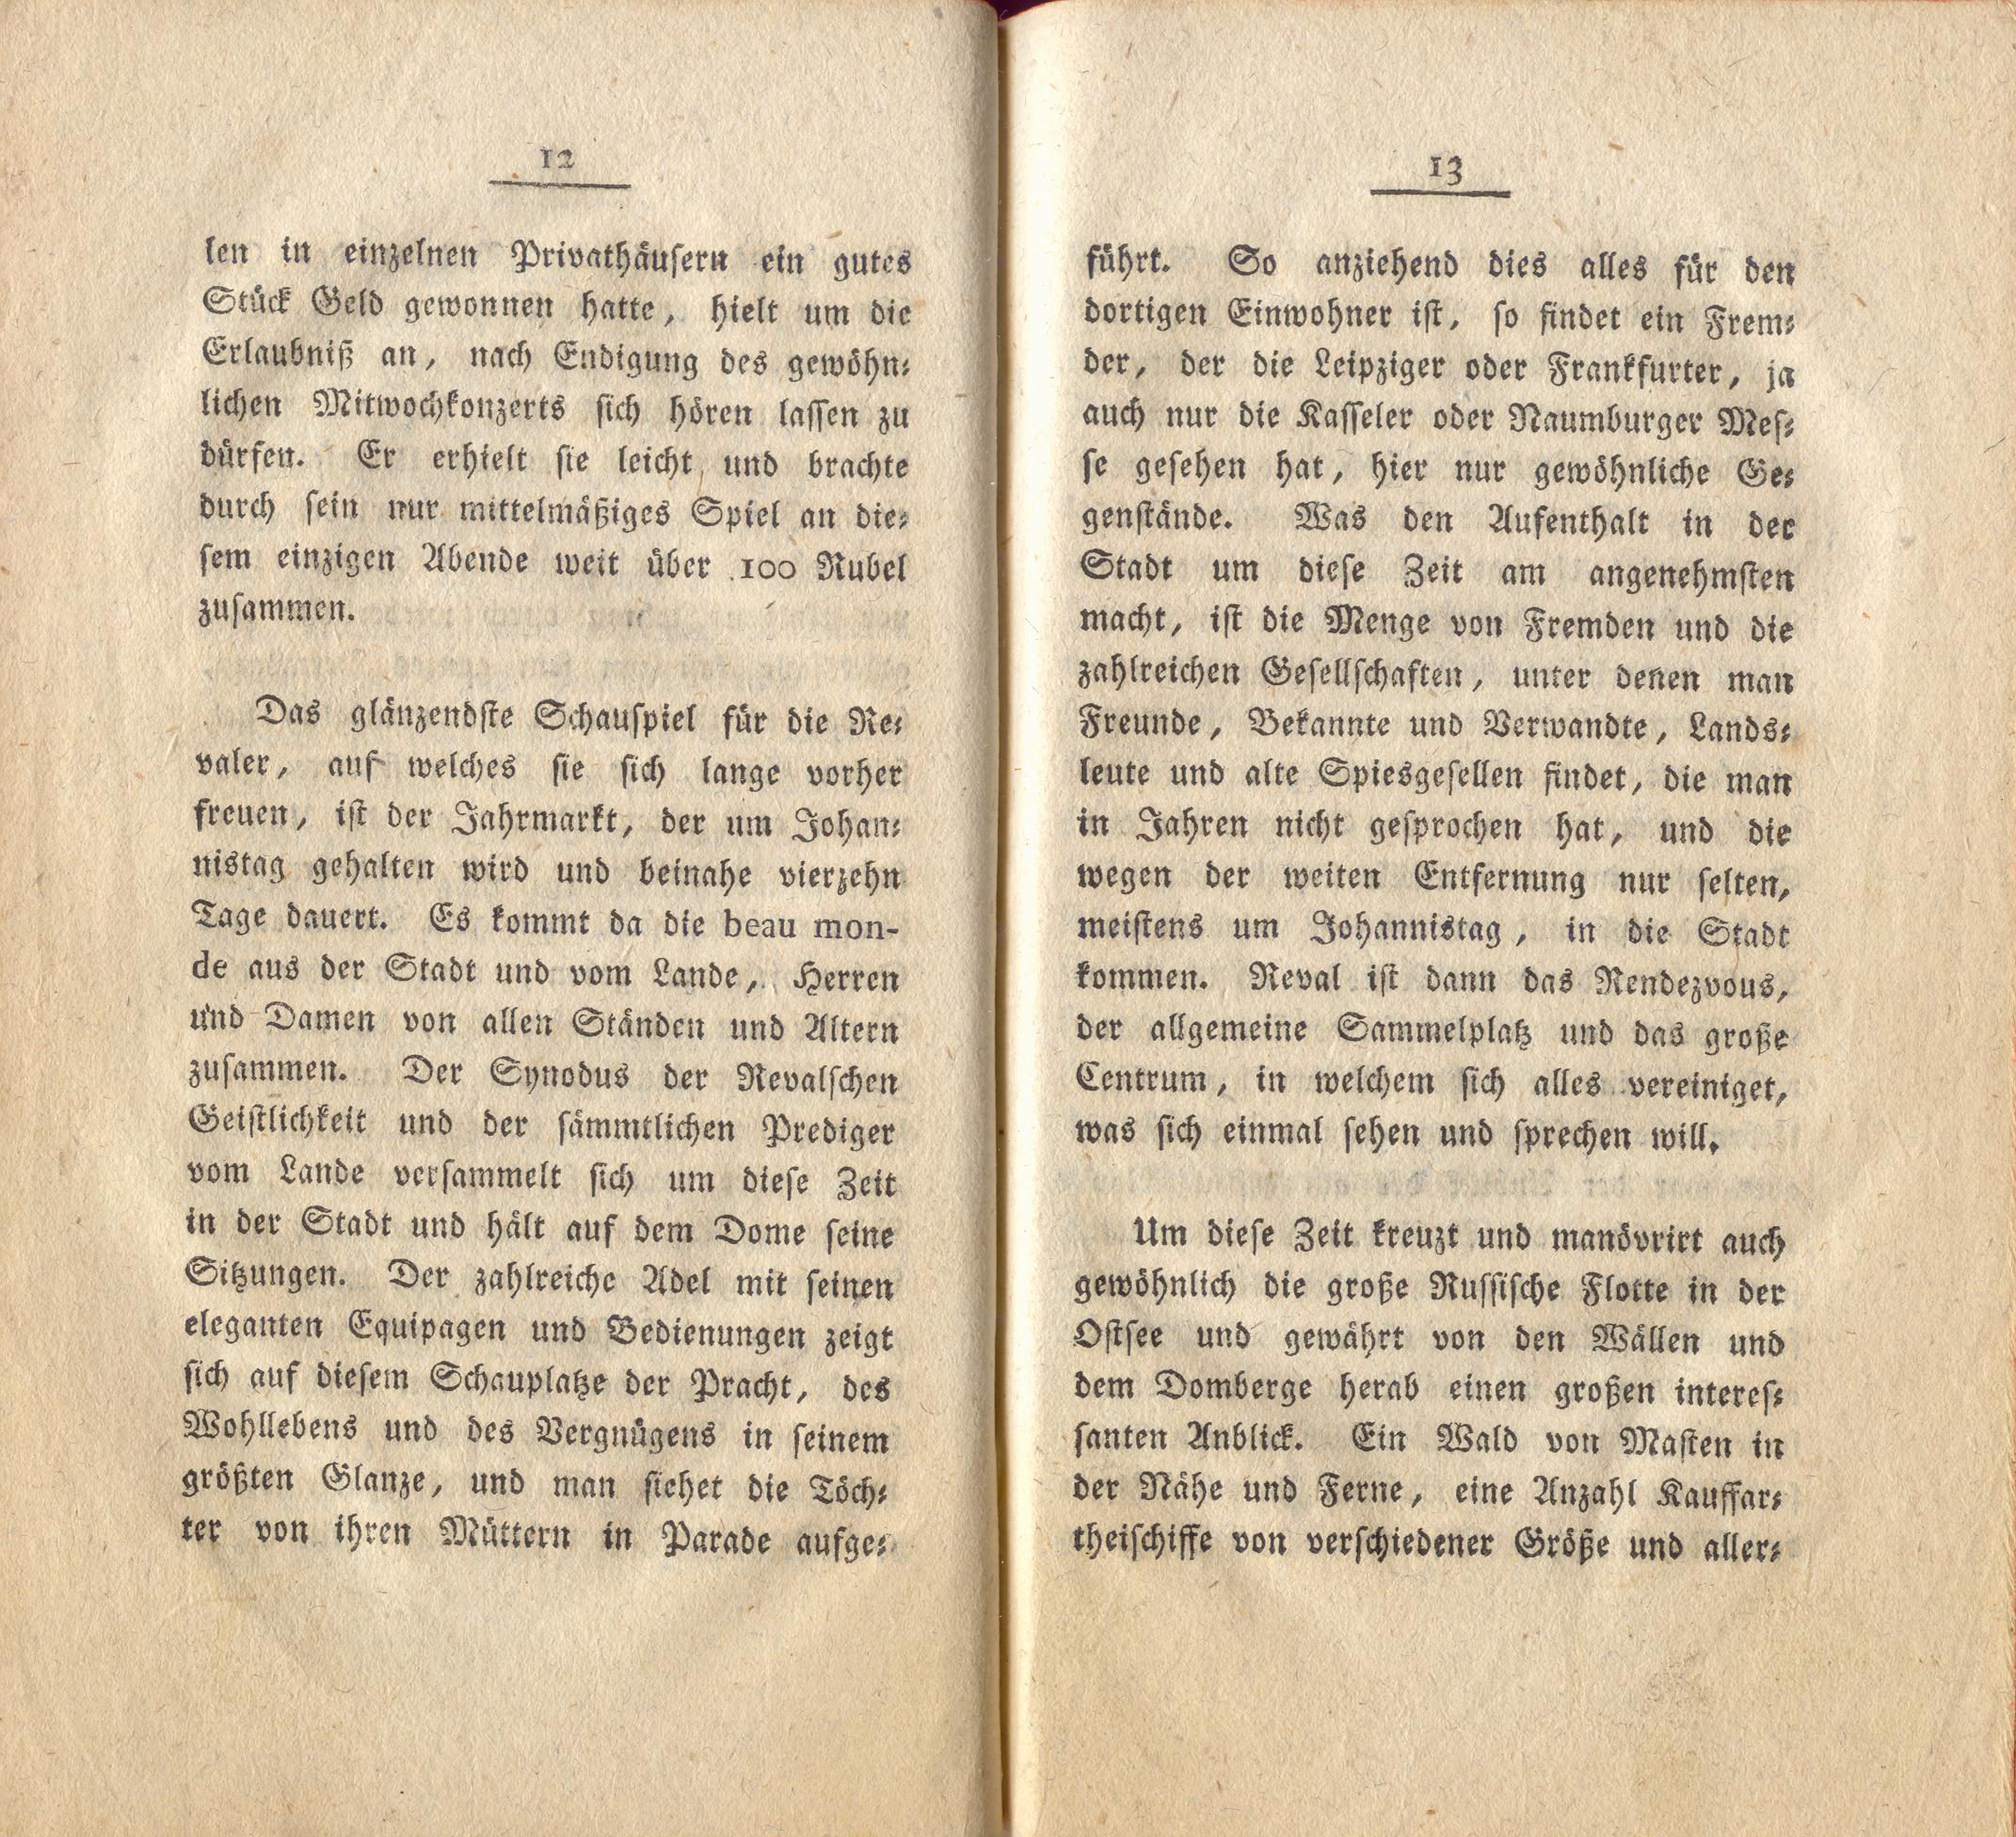 Neue Pittoresken aus Norden (1805) | 11. (12-13) Main body of text